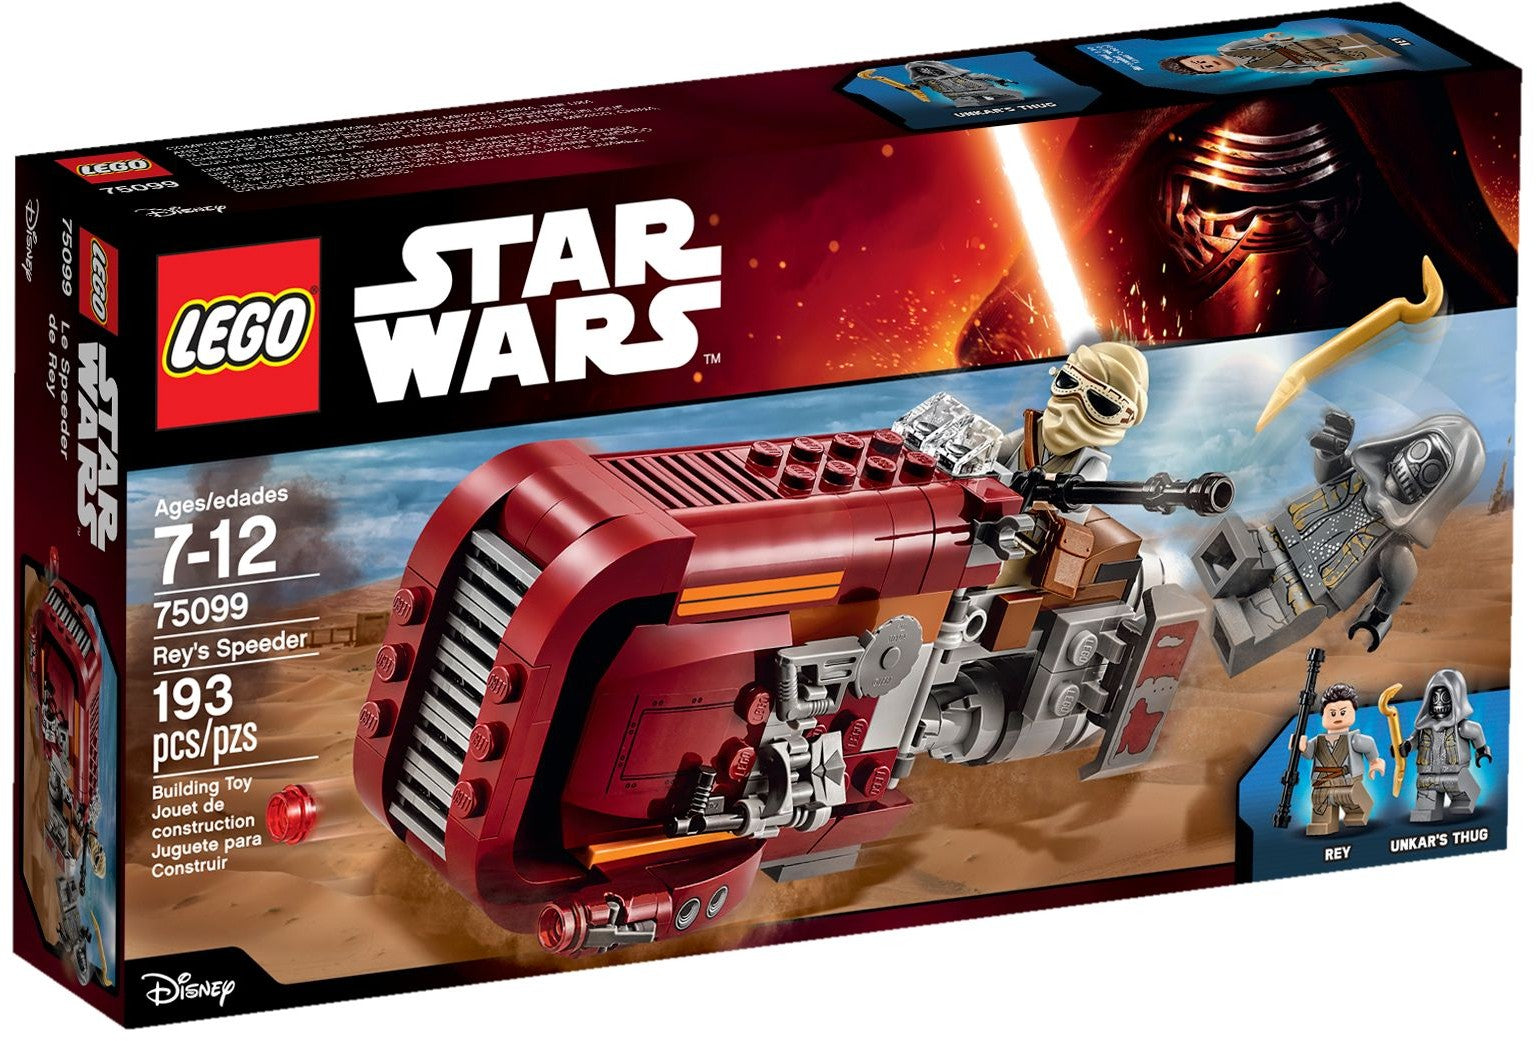 Lego Star Wars 75099 - Rey's Speeder